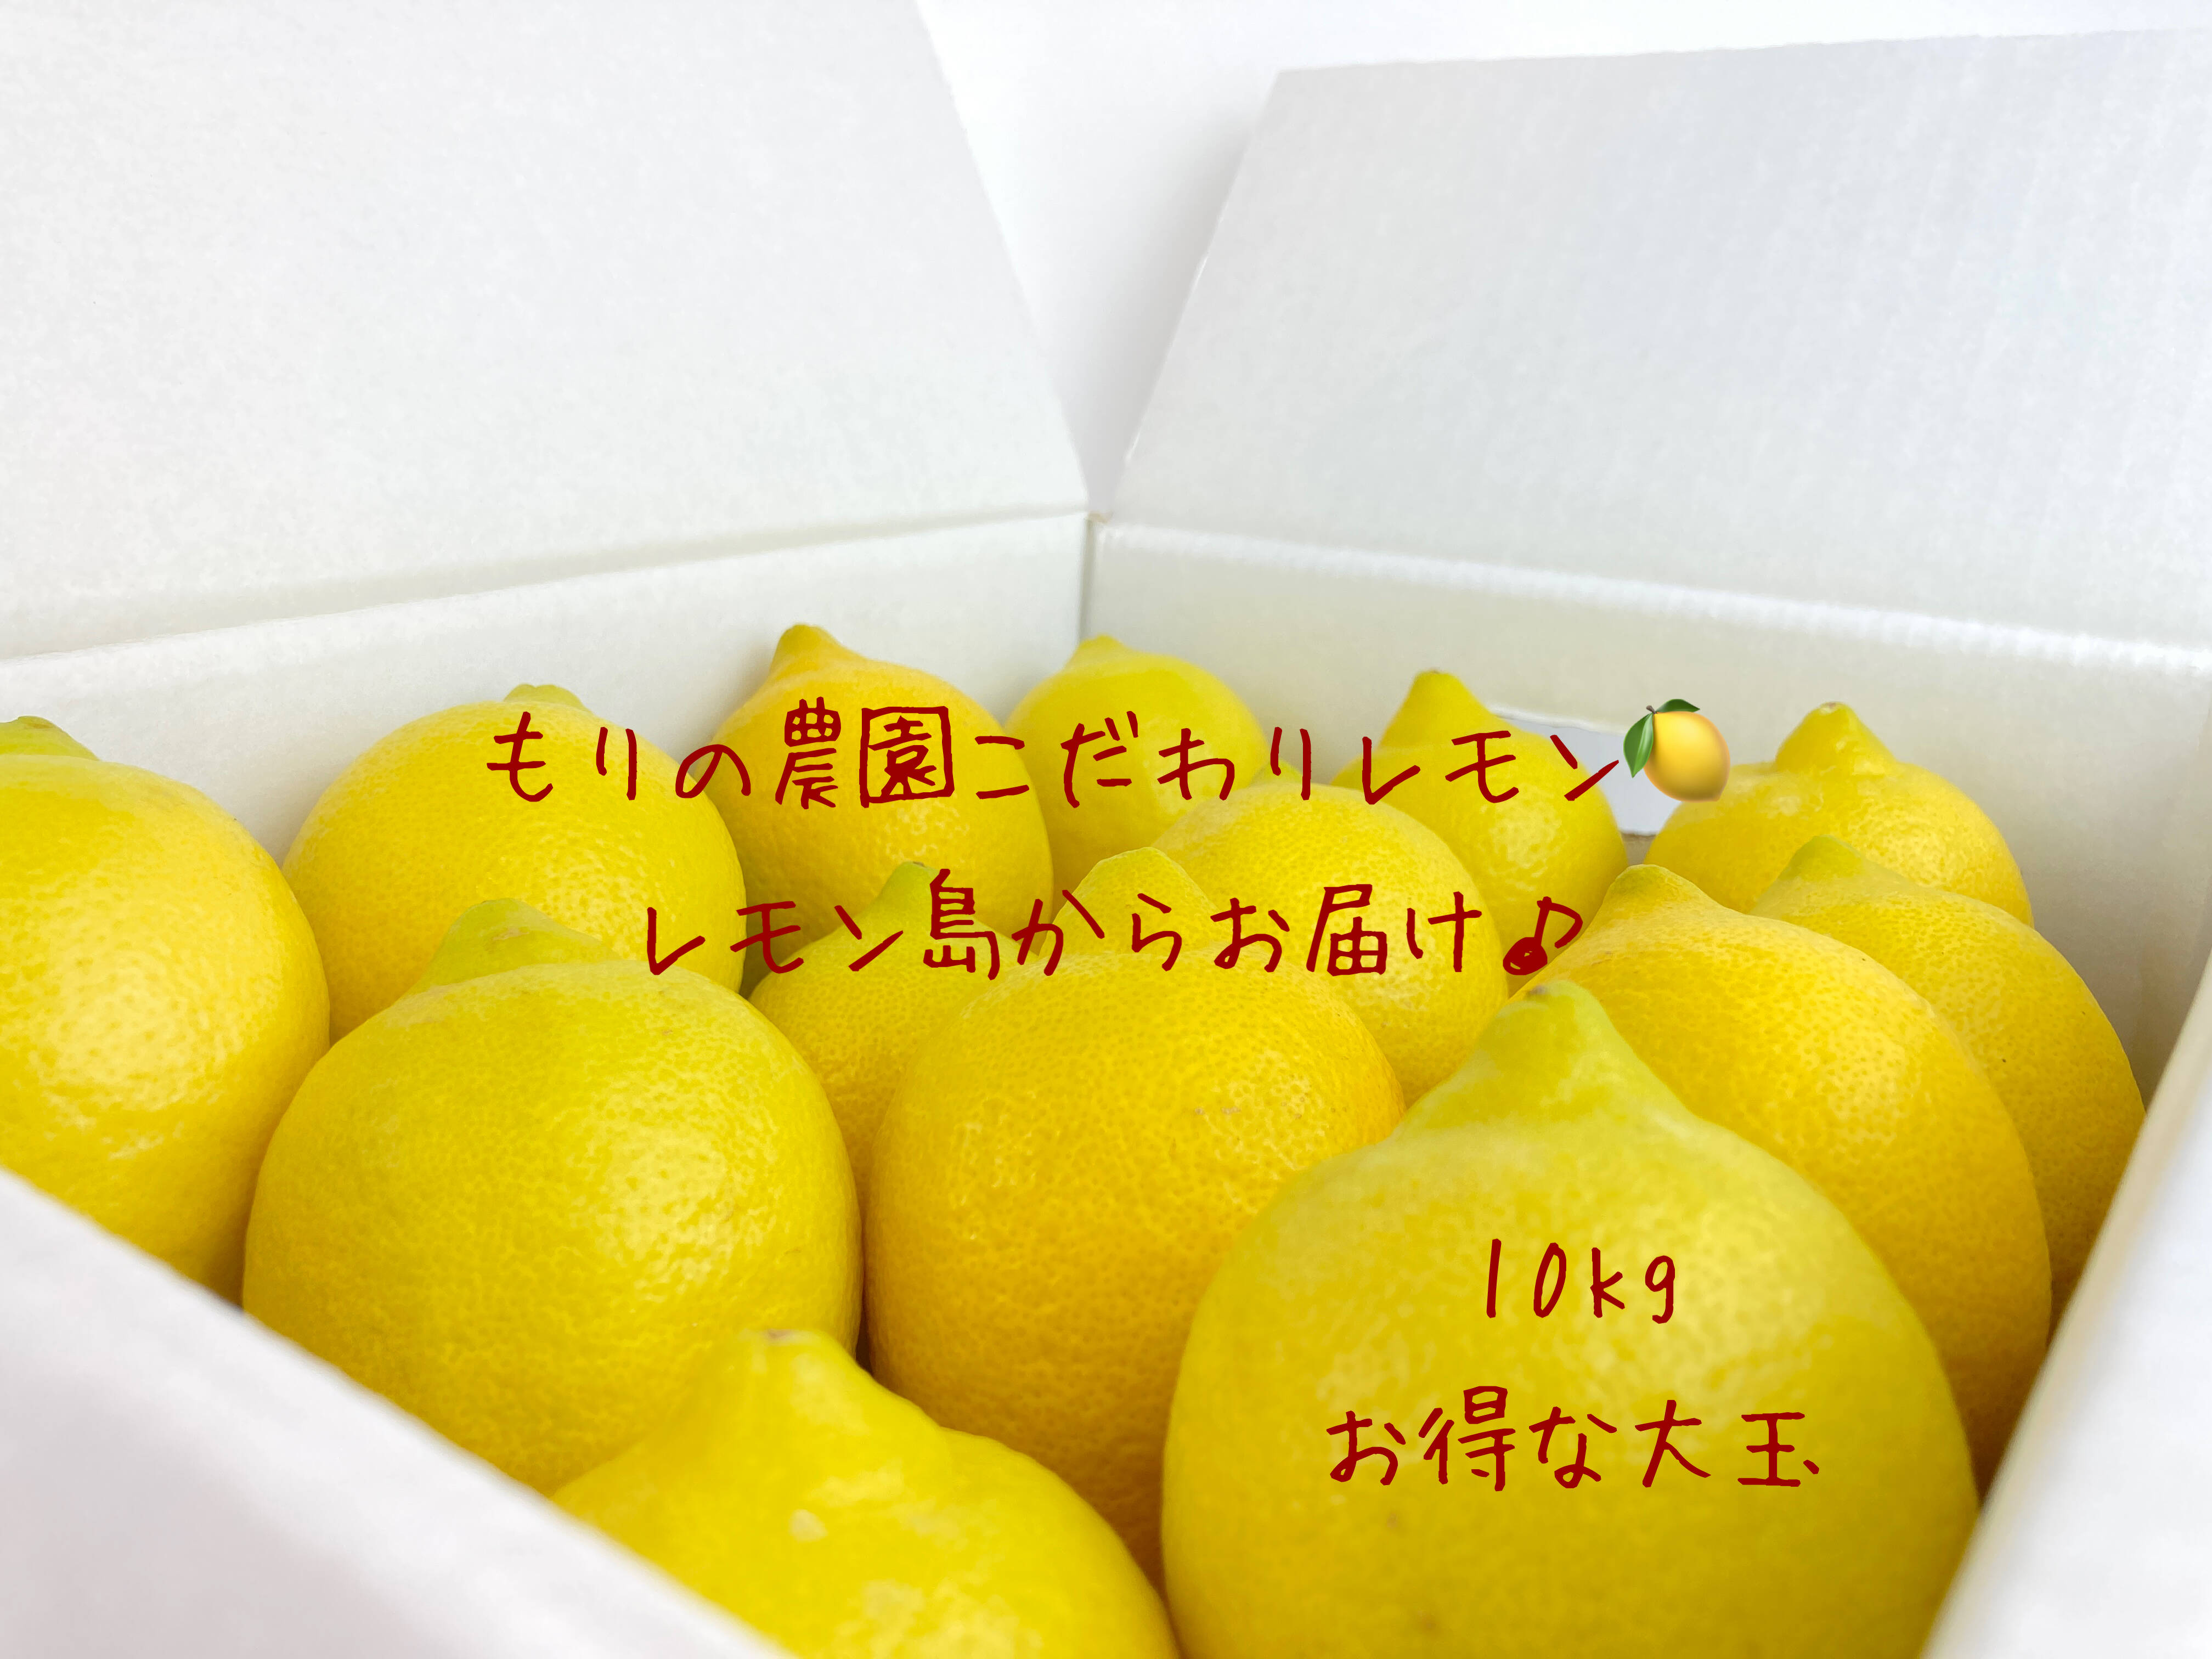 レモン 10kg - 通販 - univ-garoua.cm